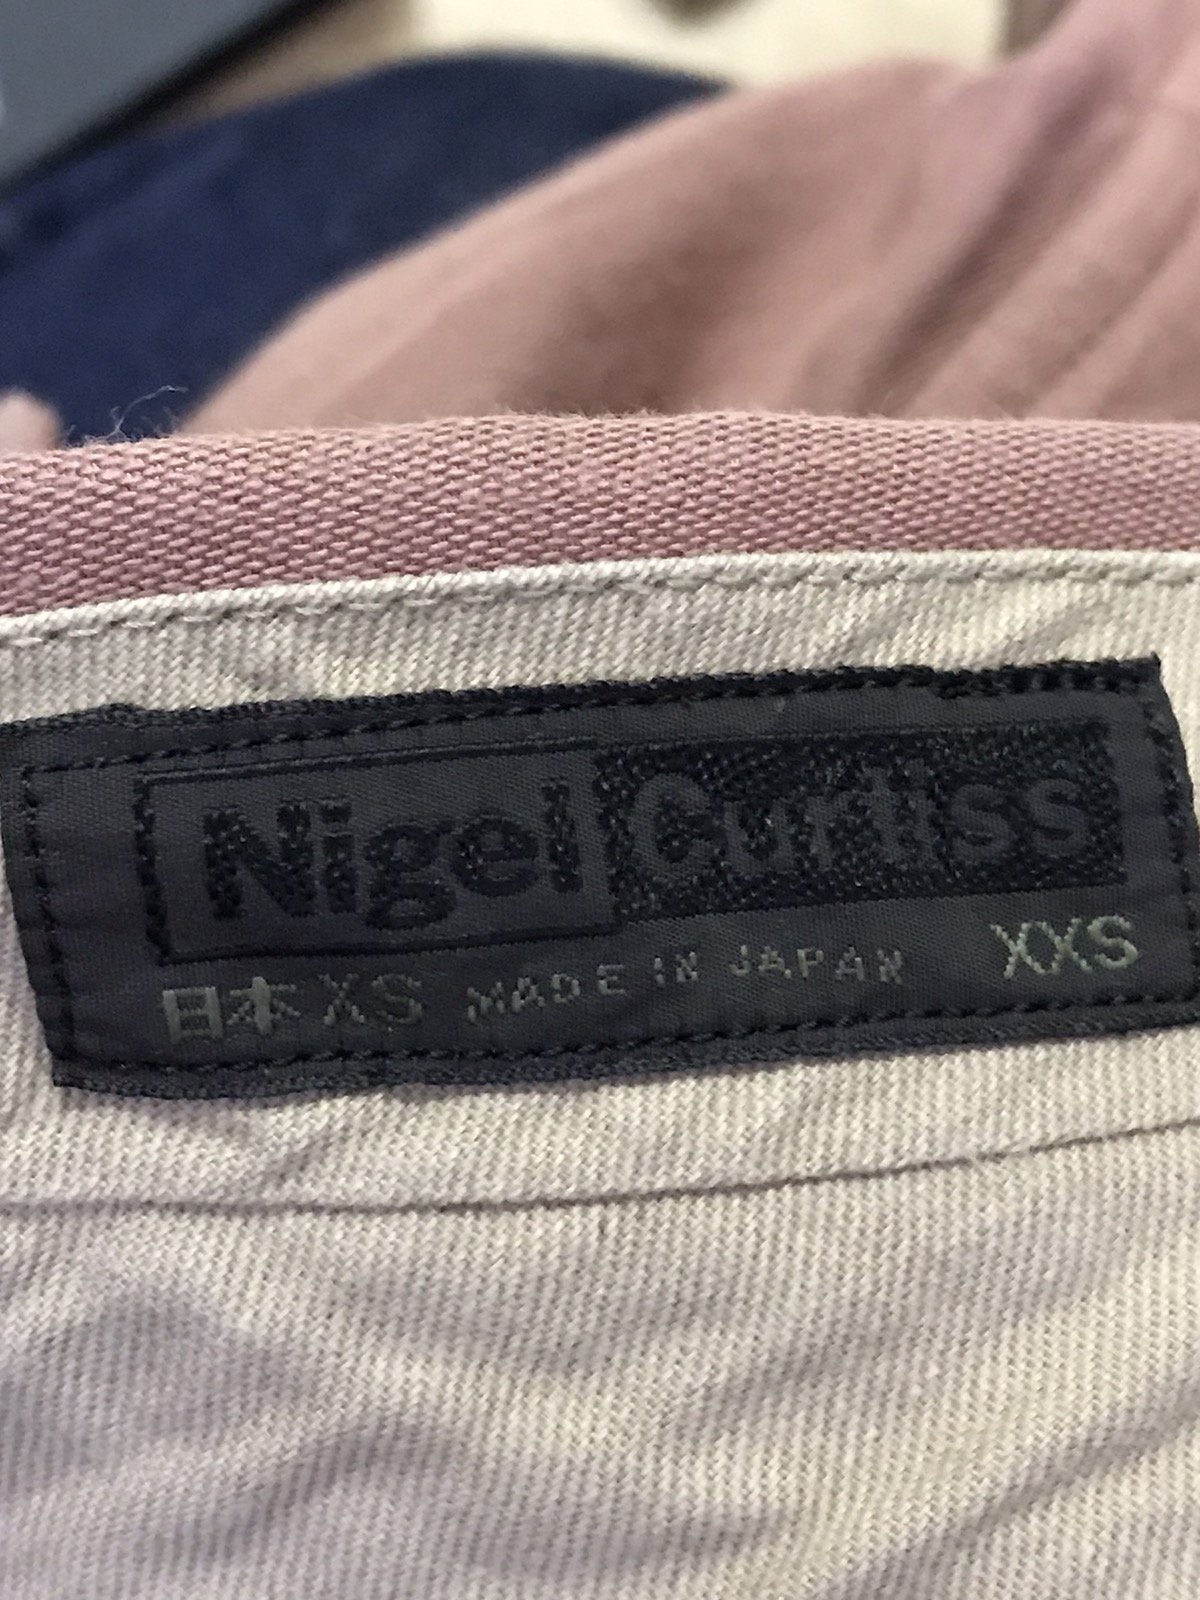 Nigel Curtiss Baggy Designer Wool Pants Made In Japan - 9